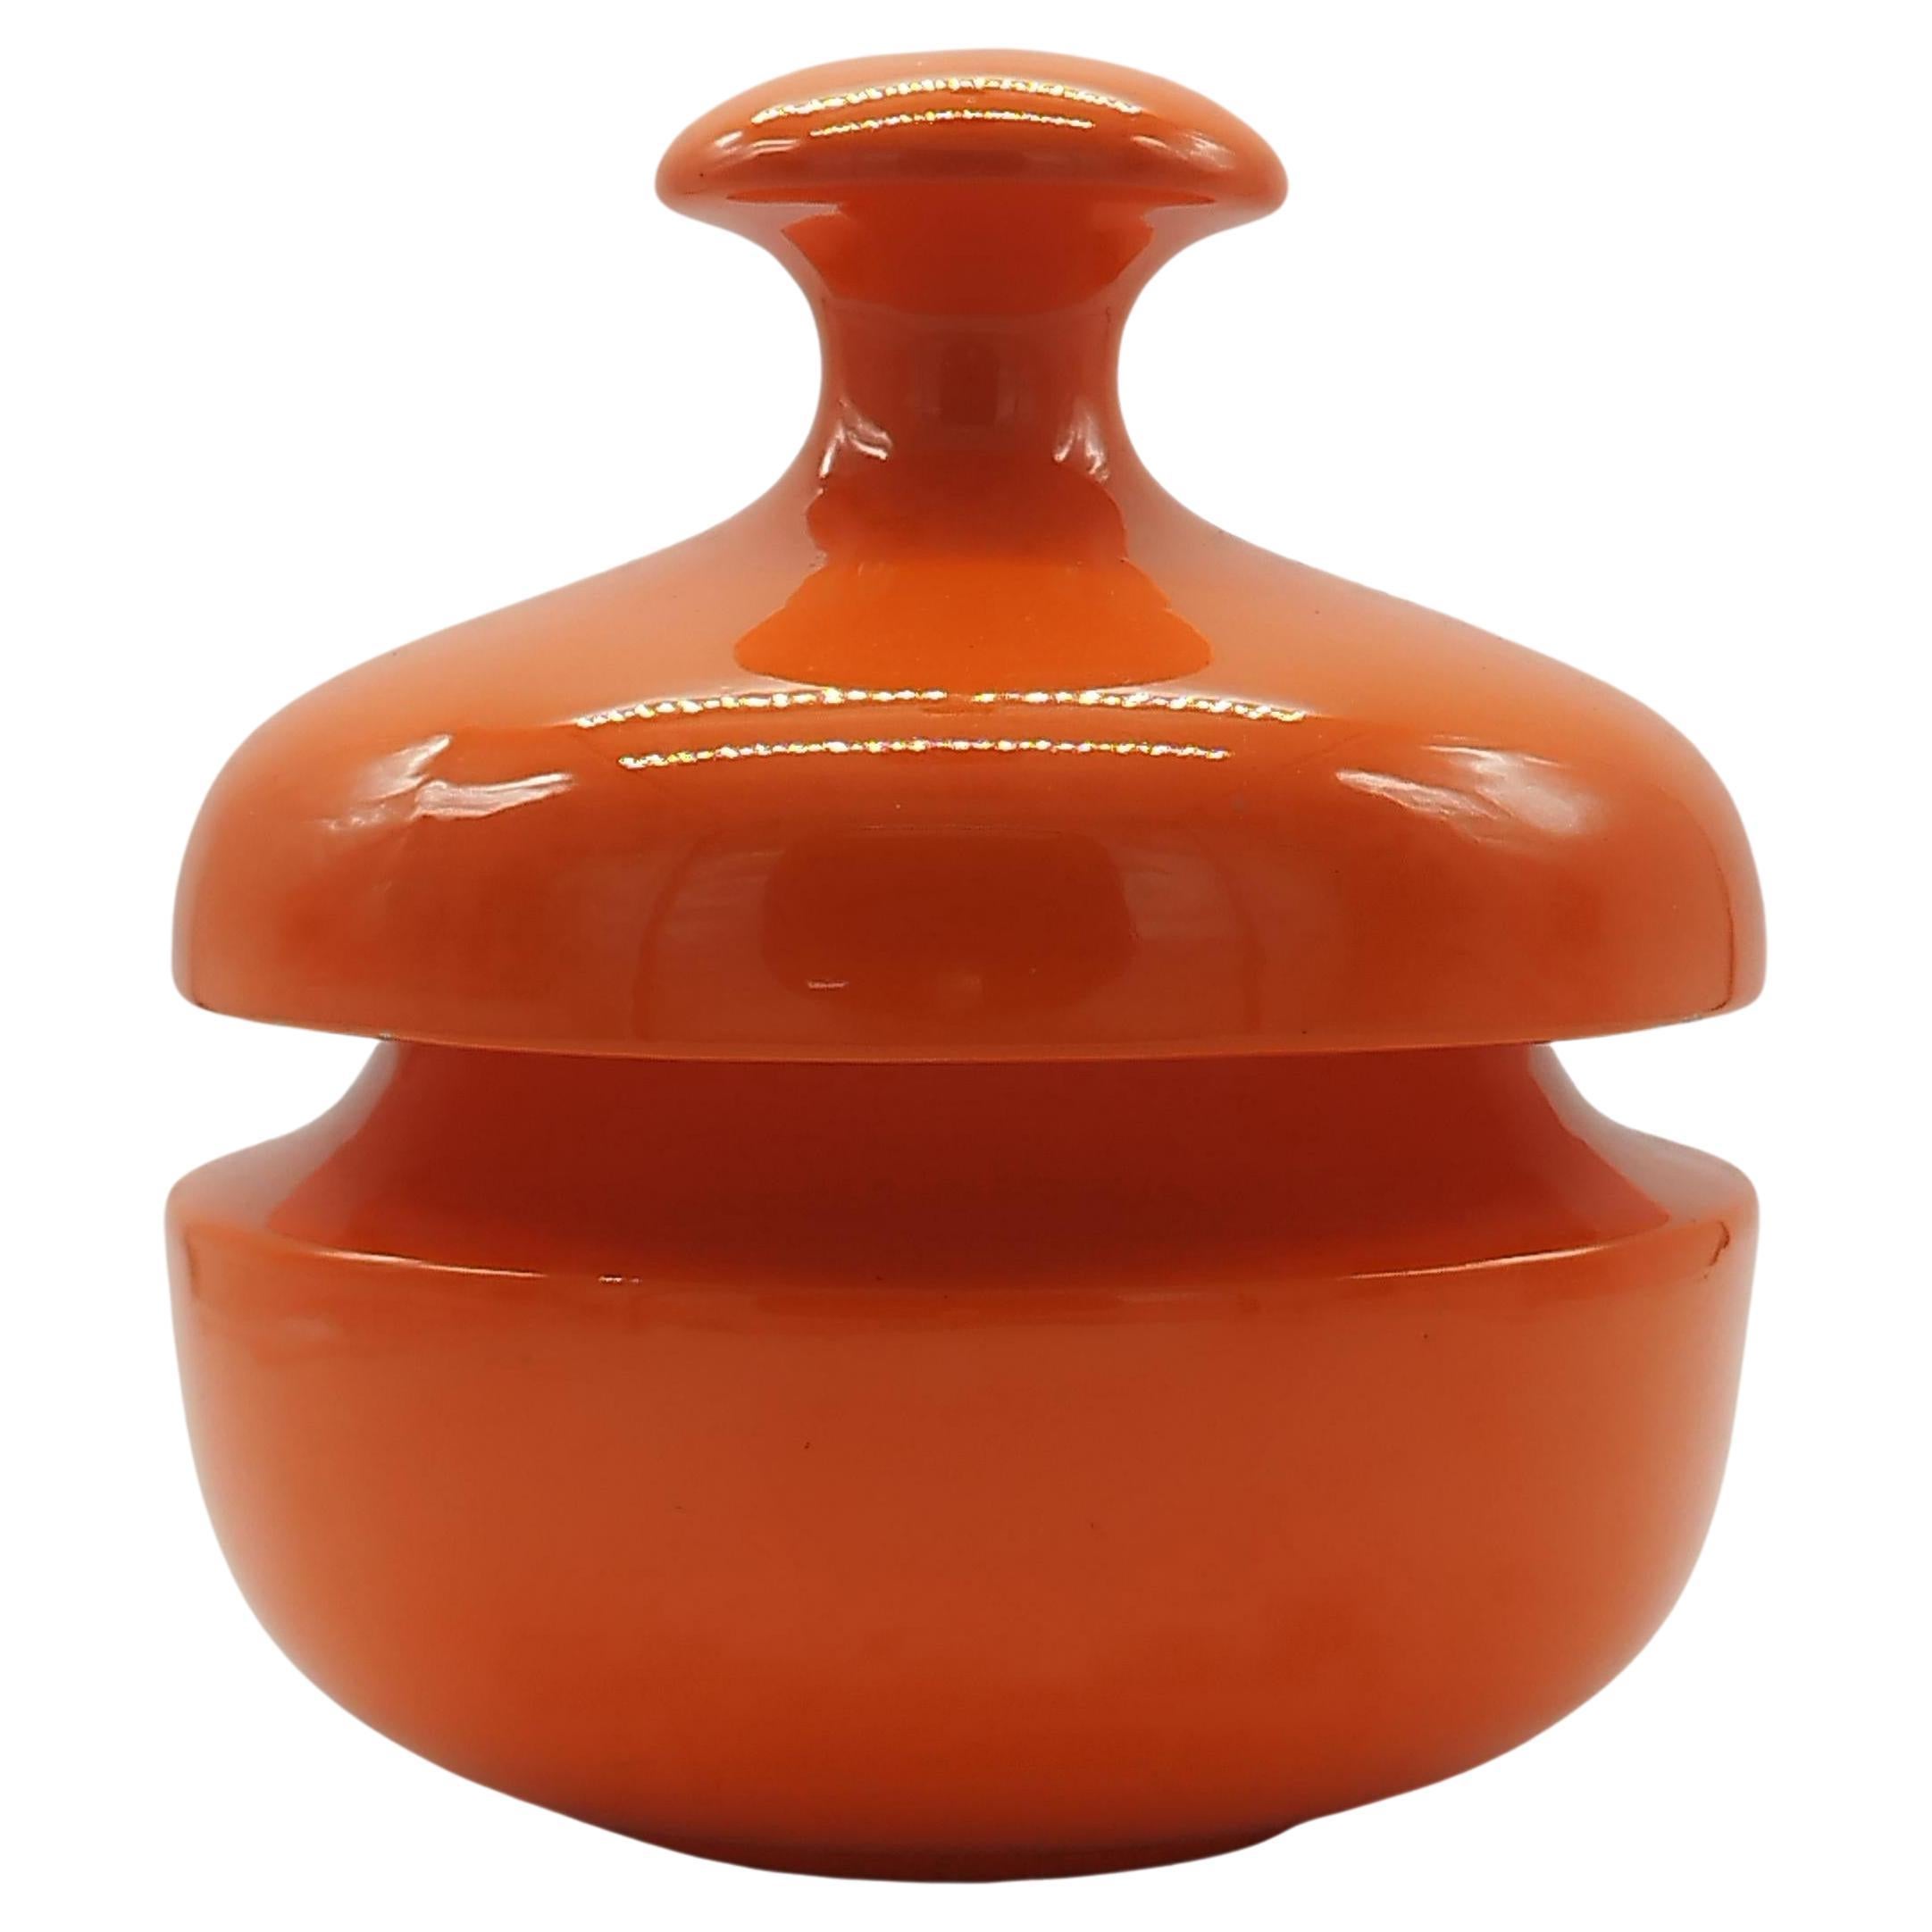 Enzo Bioli for Il Picchio Orange Ceramic Biscuit Jar, Italy 1970